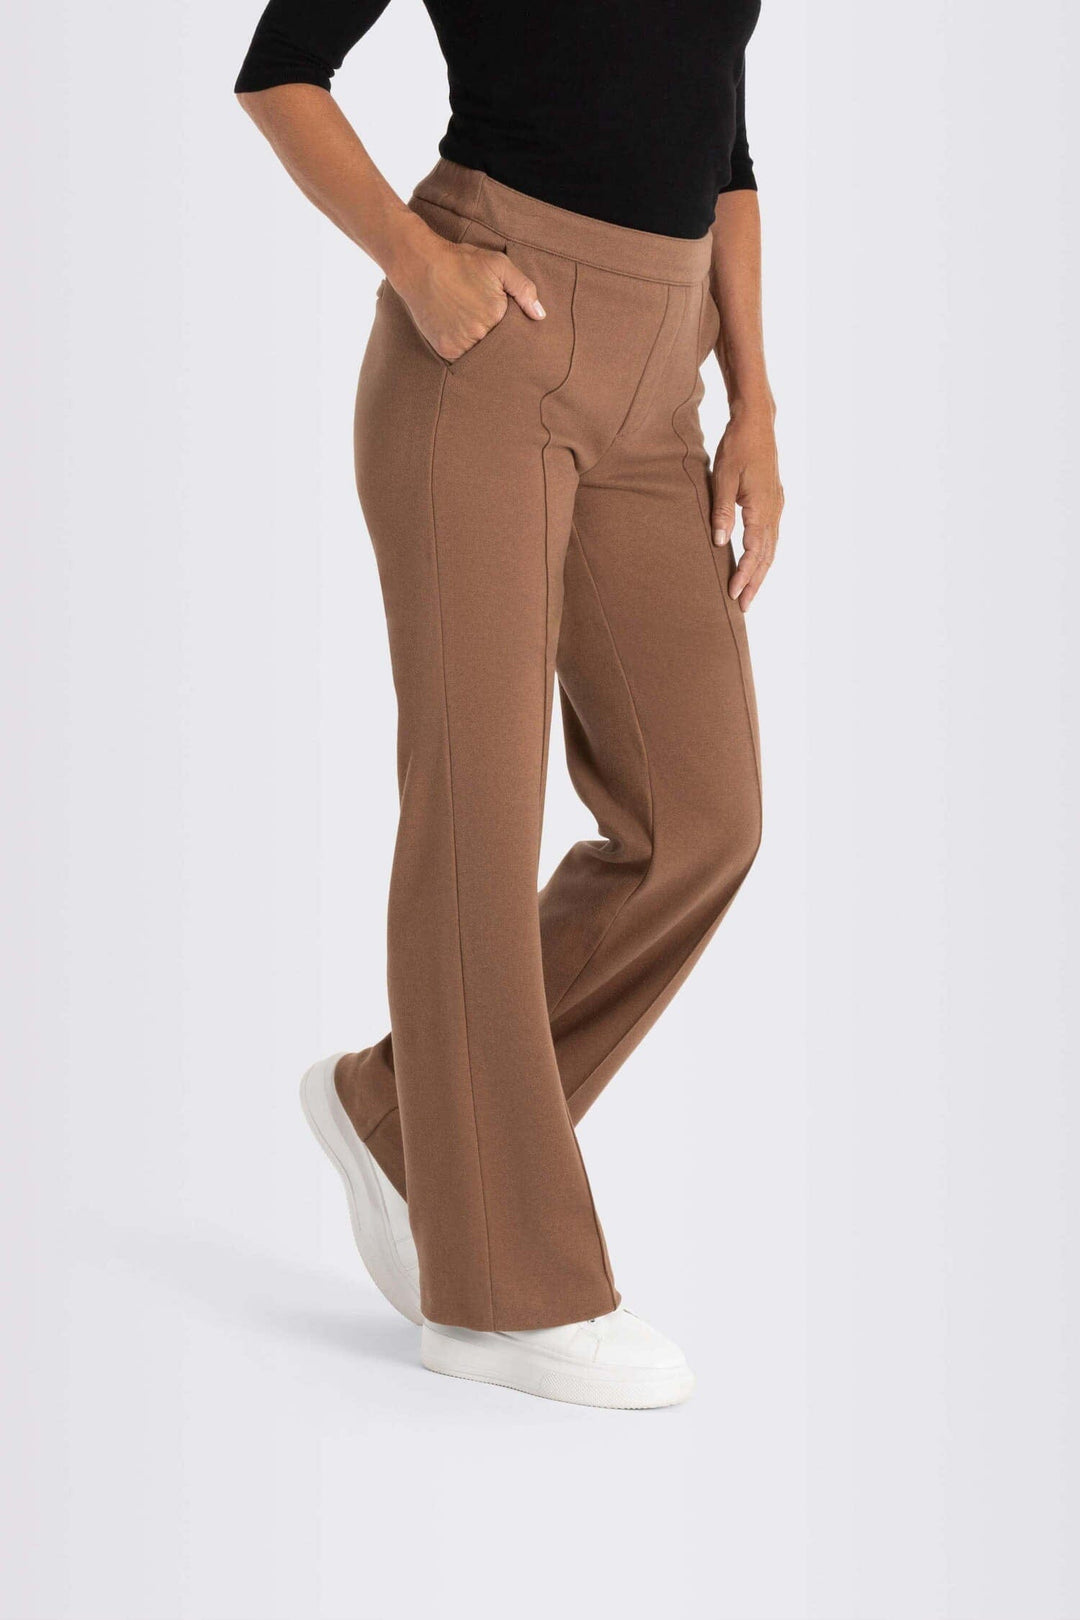 Pantalon Chiara Femme - Bas - Pantalon Mac Jeans